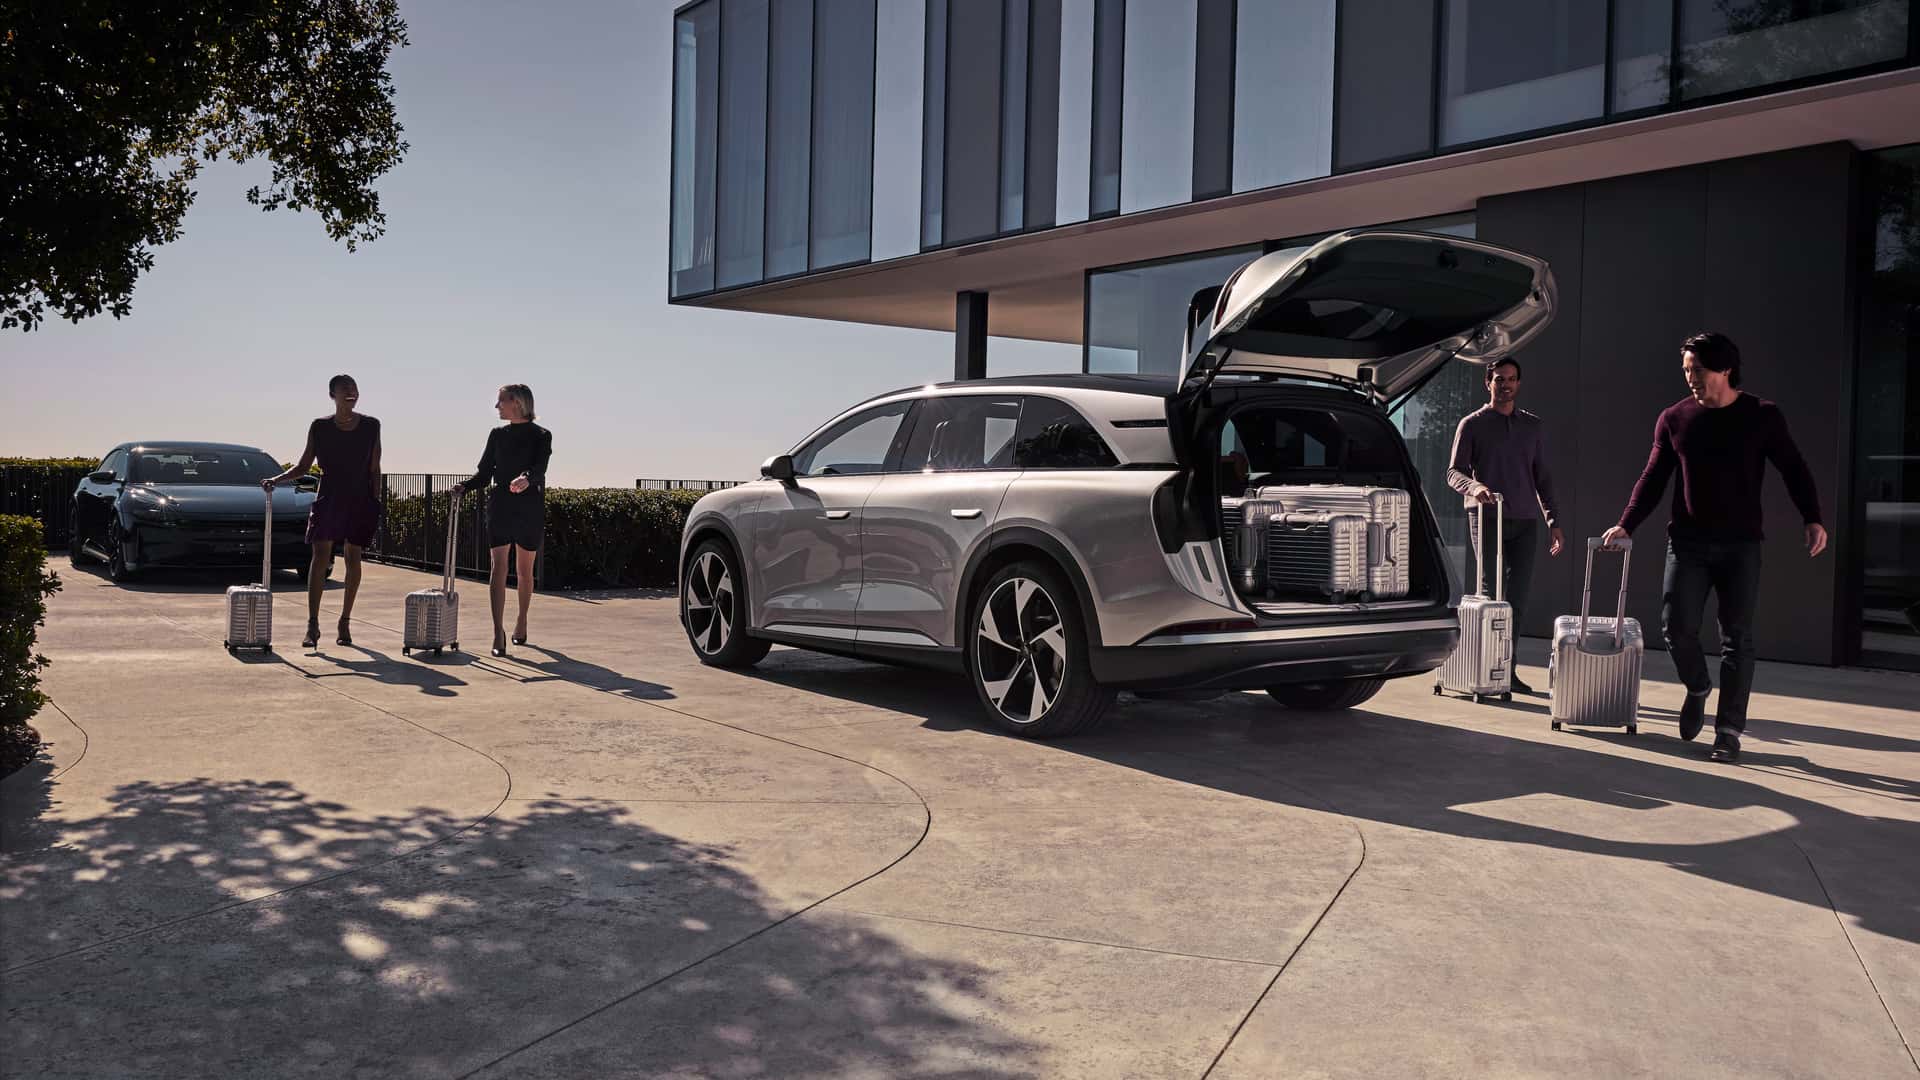 لوسيد جرافيتي SUV الكهربائية الفاخرة تنطلق رسمياً بمدى يتجاوز 700 كيلومتر وتسارع منافس للسيارات الخارقة 2